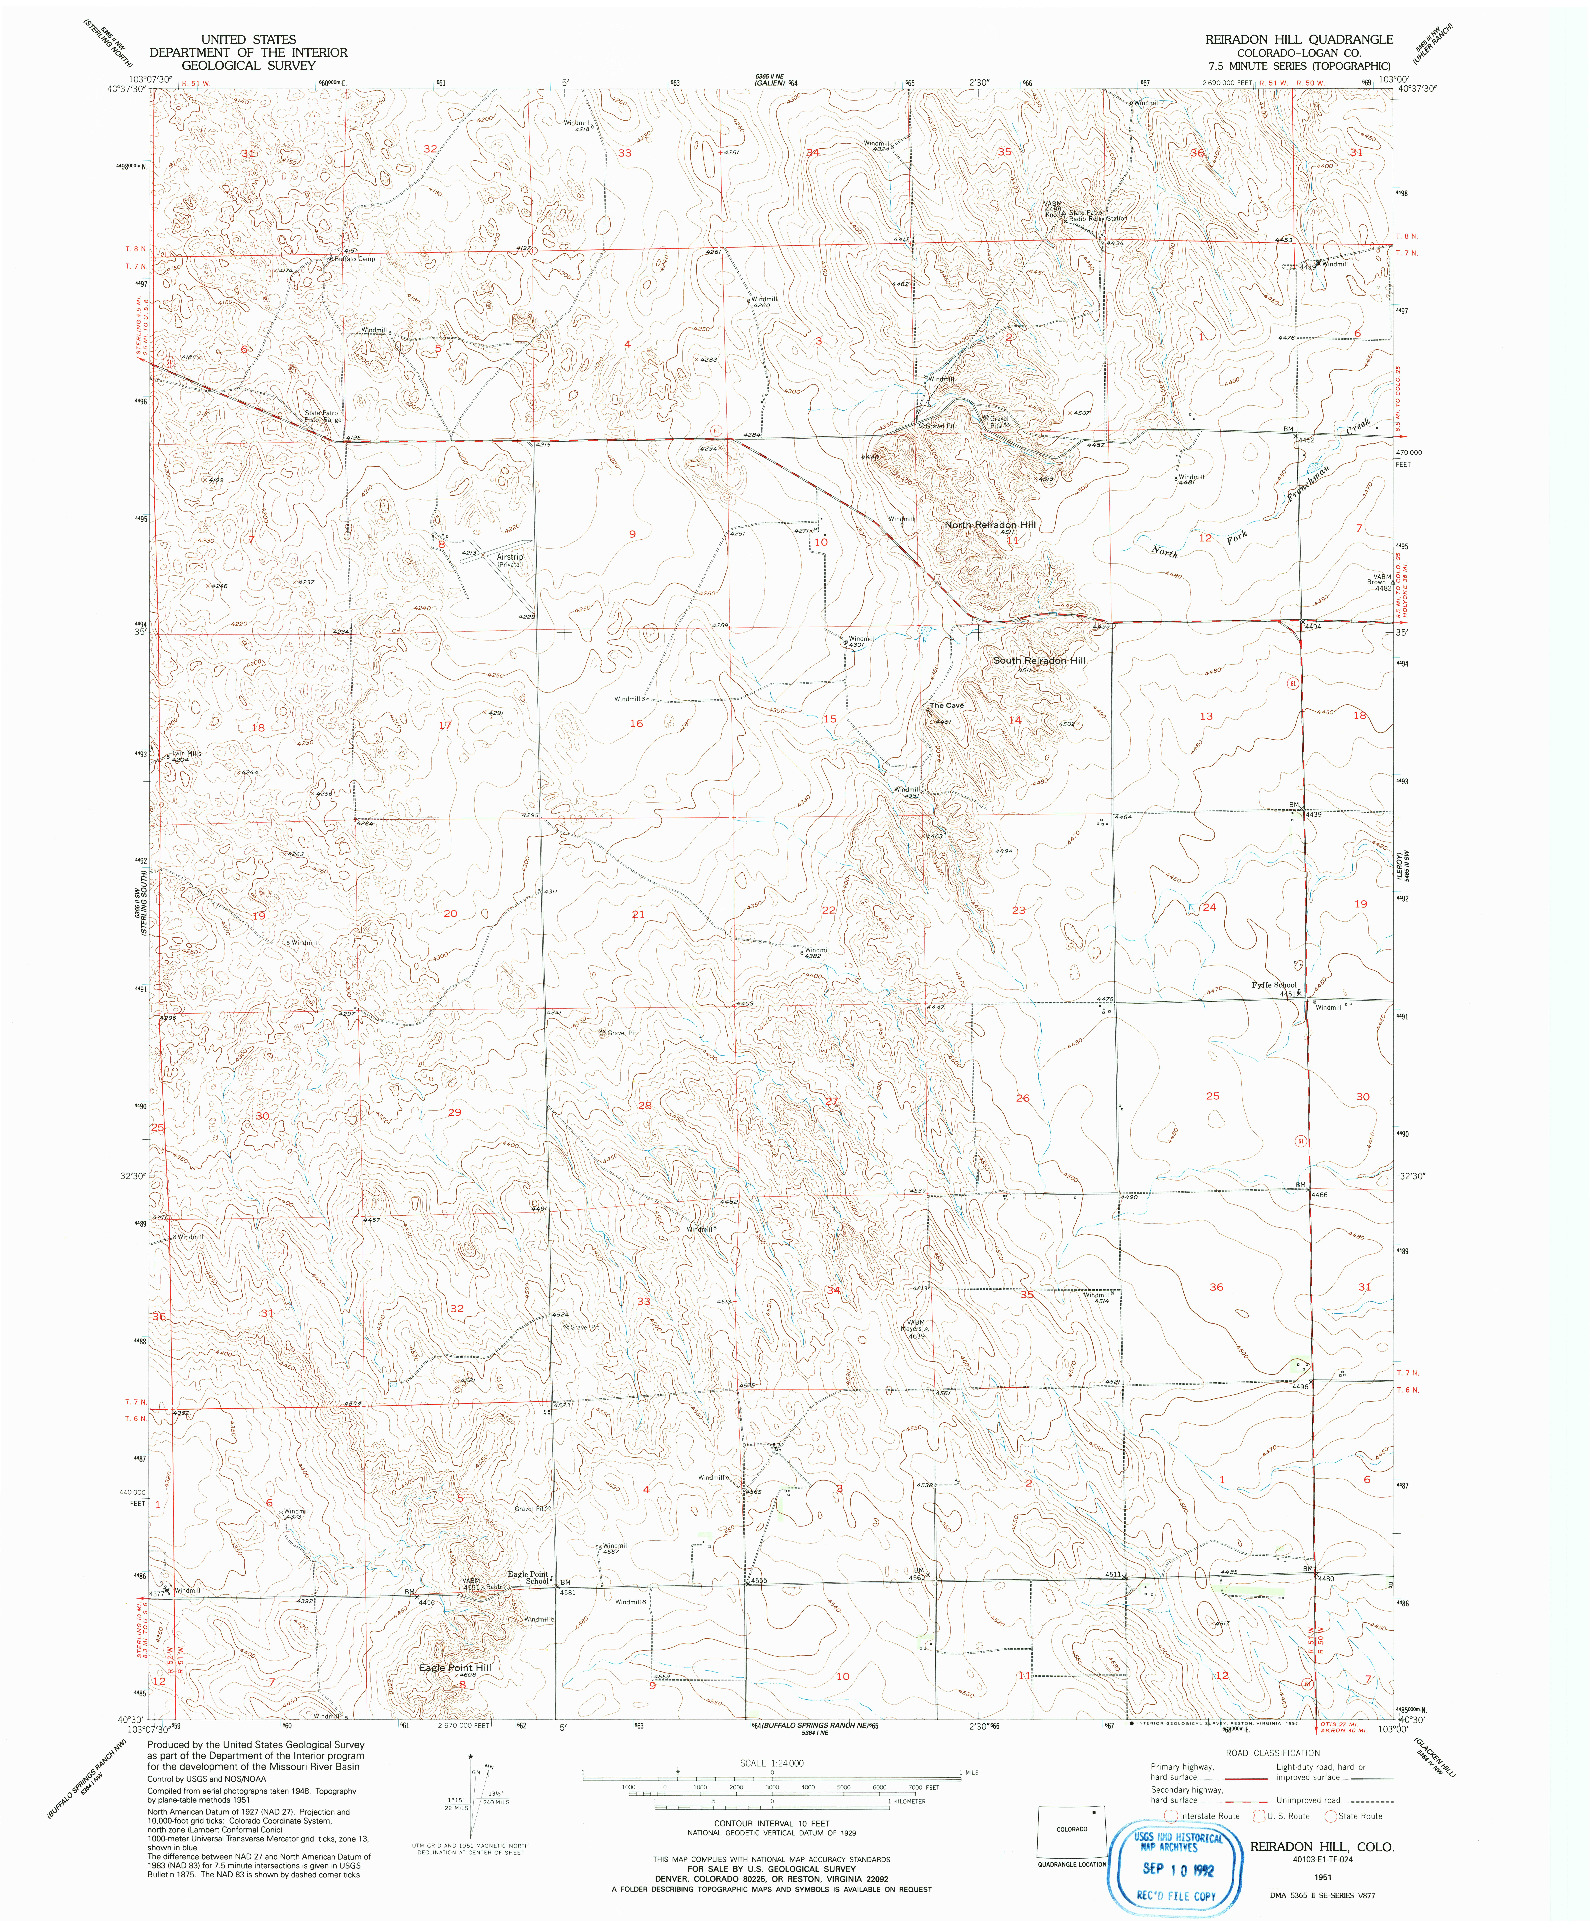 USGS 1:24000-SCALE QUADRANGLE FOR REIRADON HILL, CO 1951